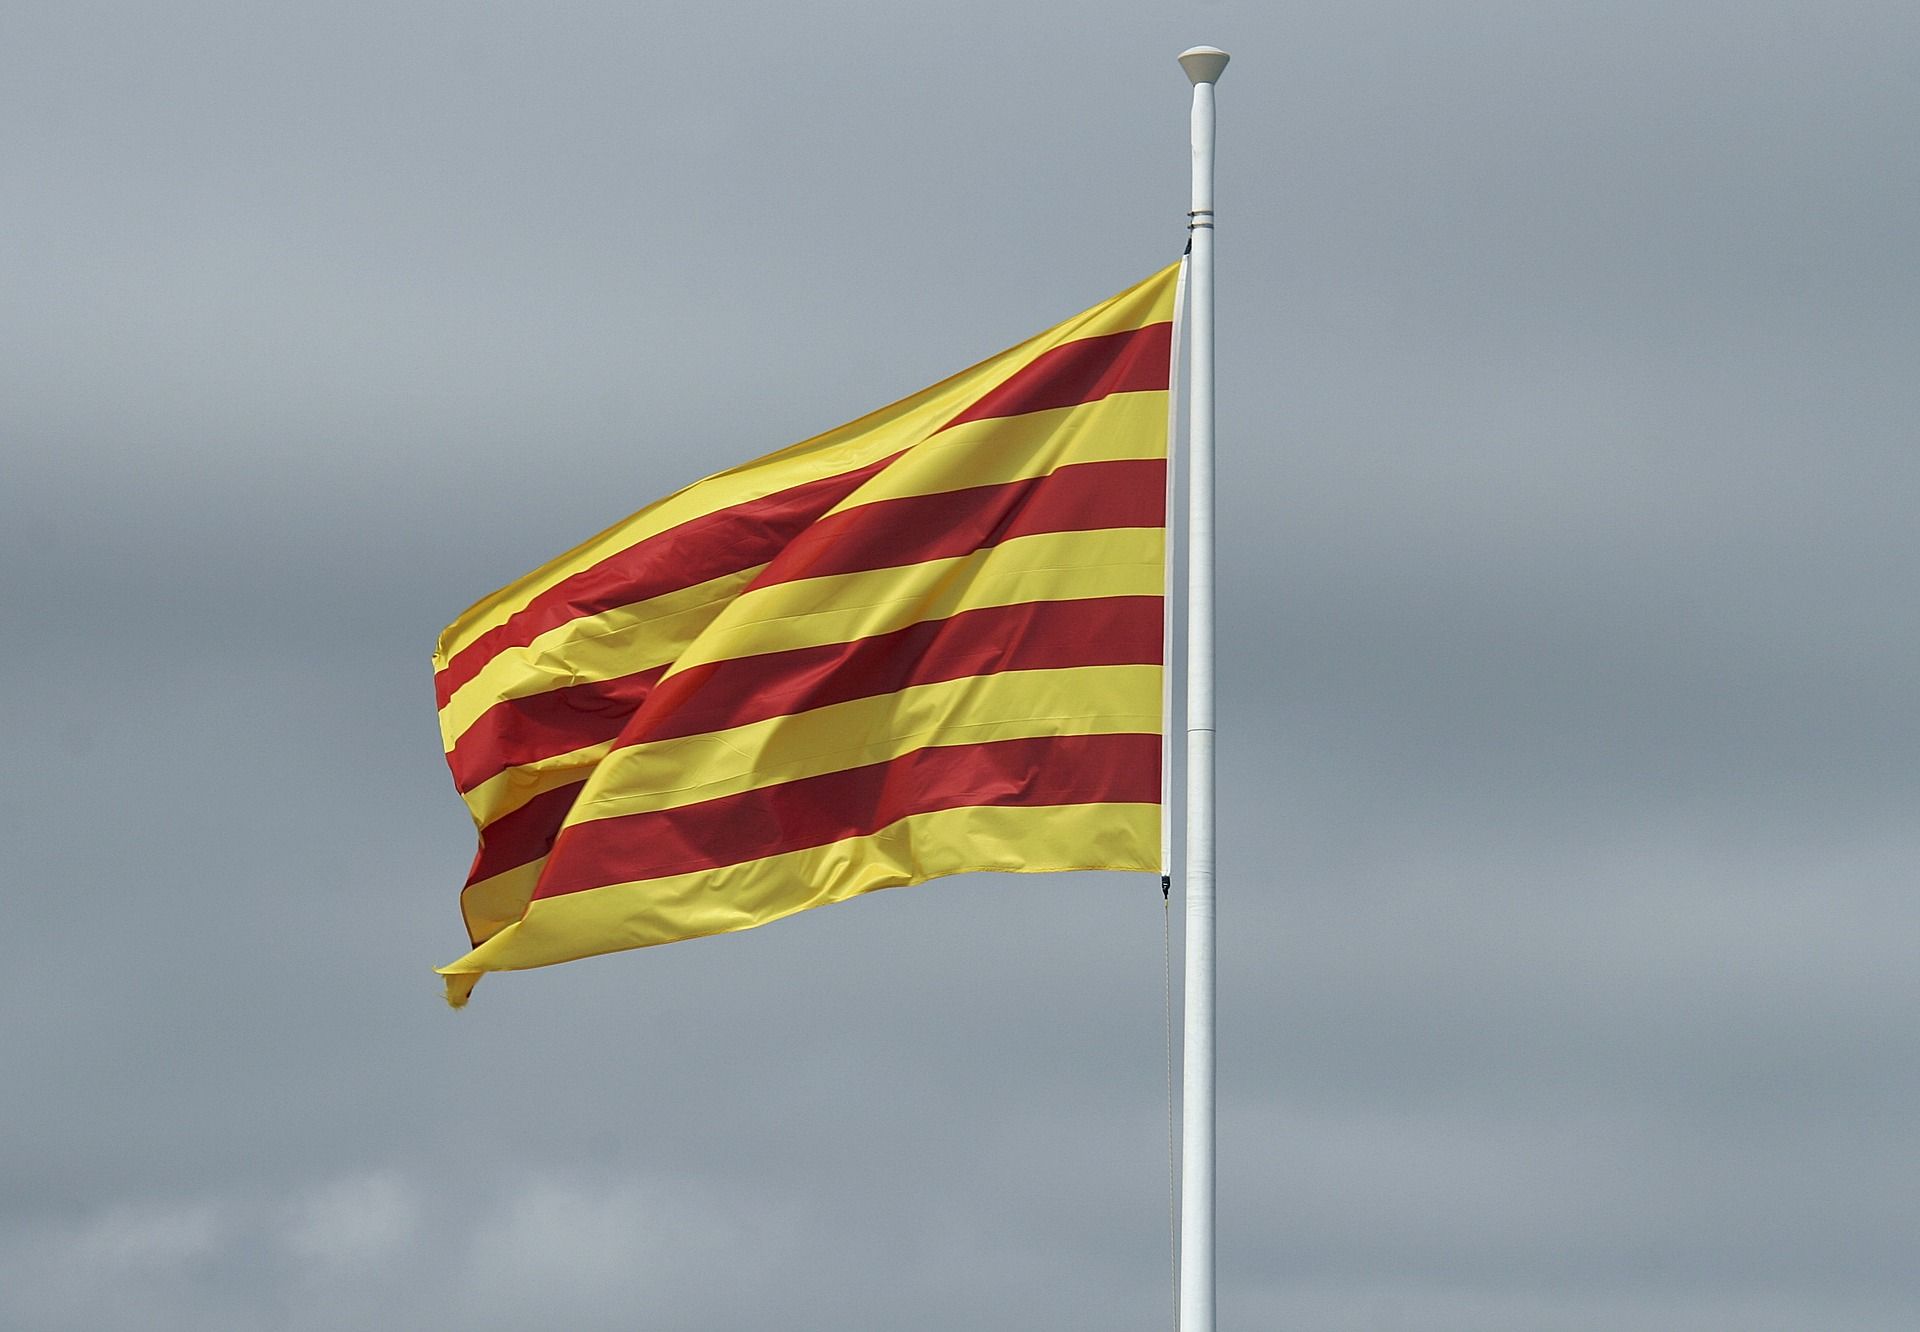 Plataforma per la Llengua teme que el 155 perjudique el catalán en la administración